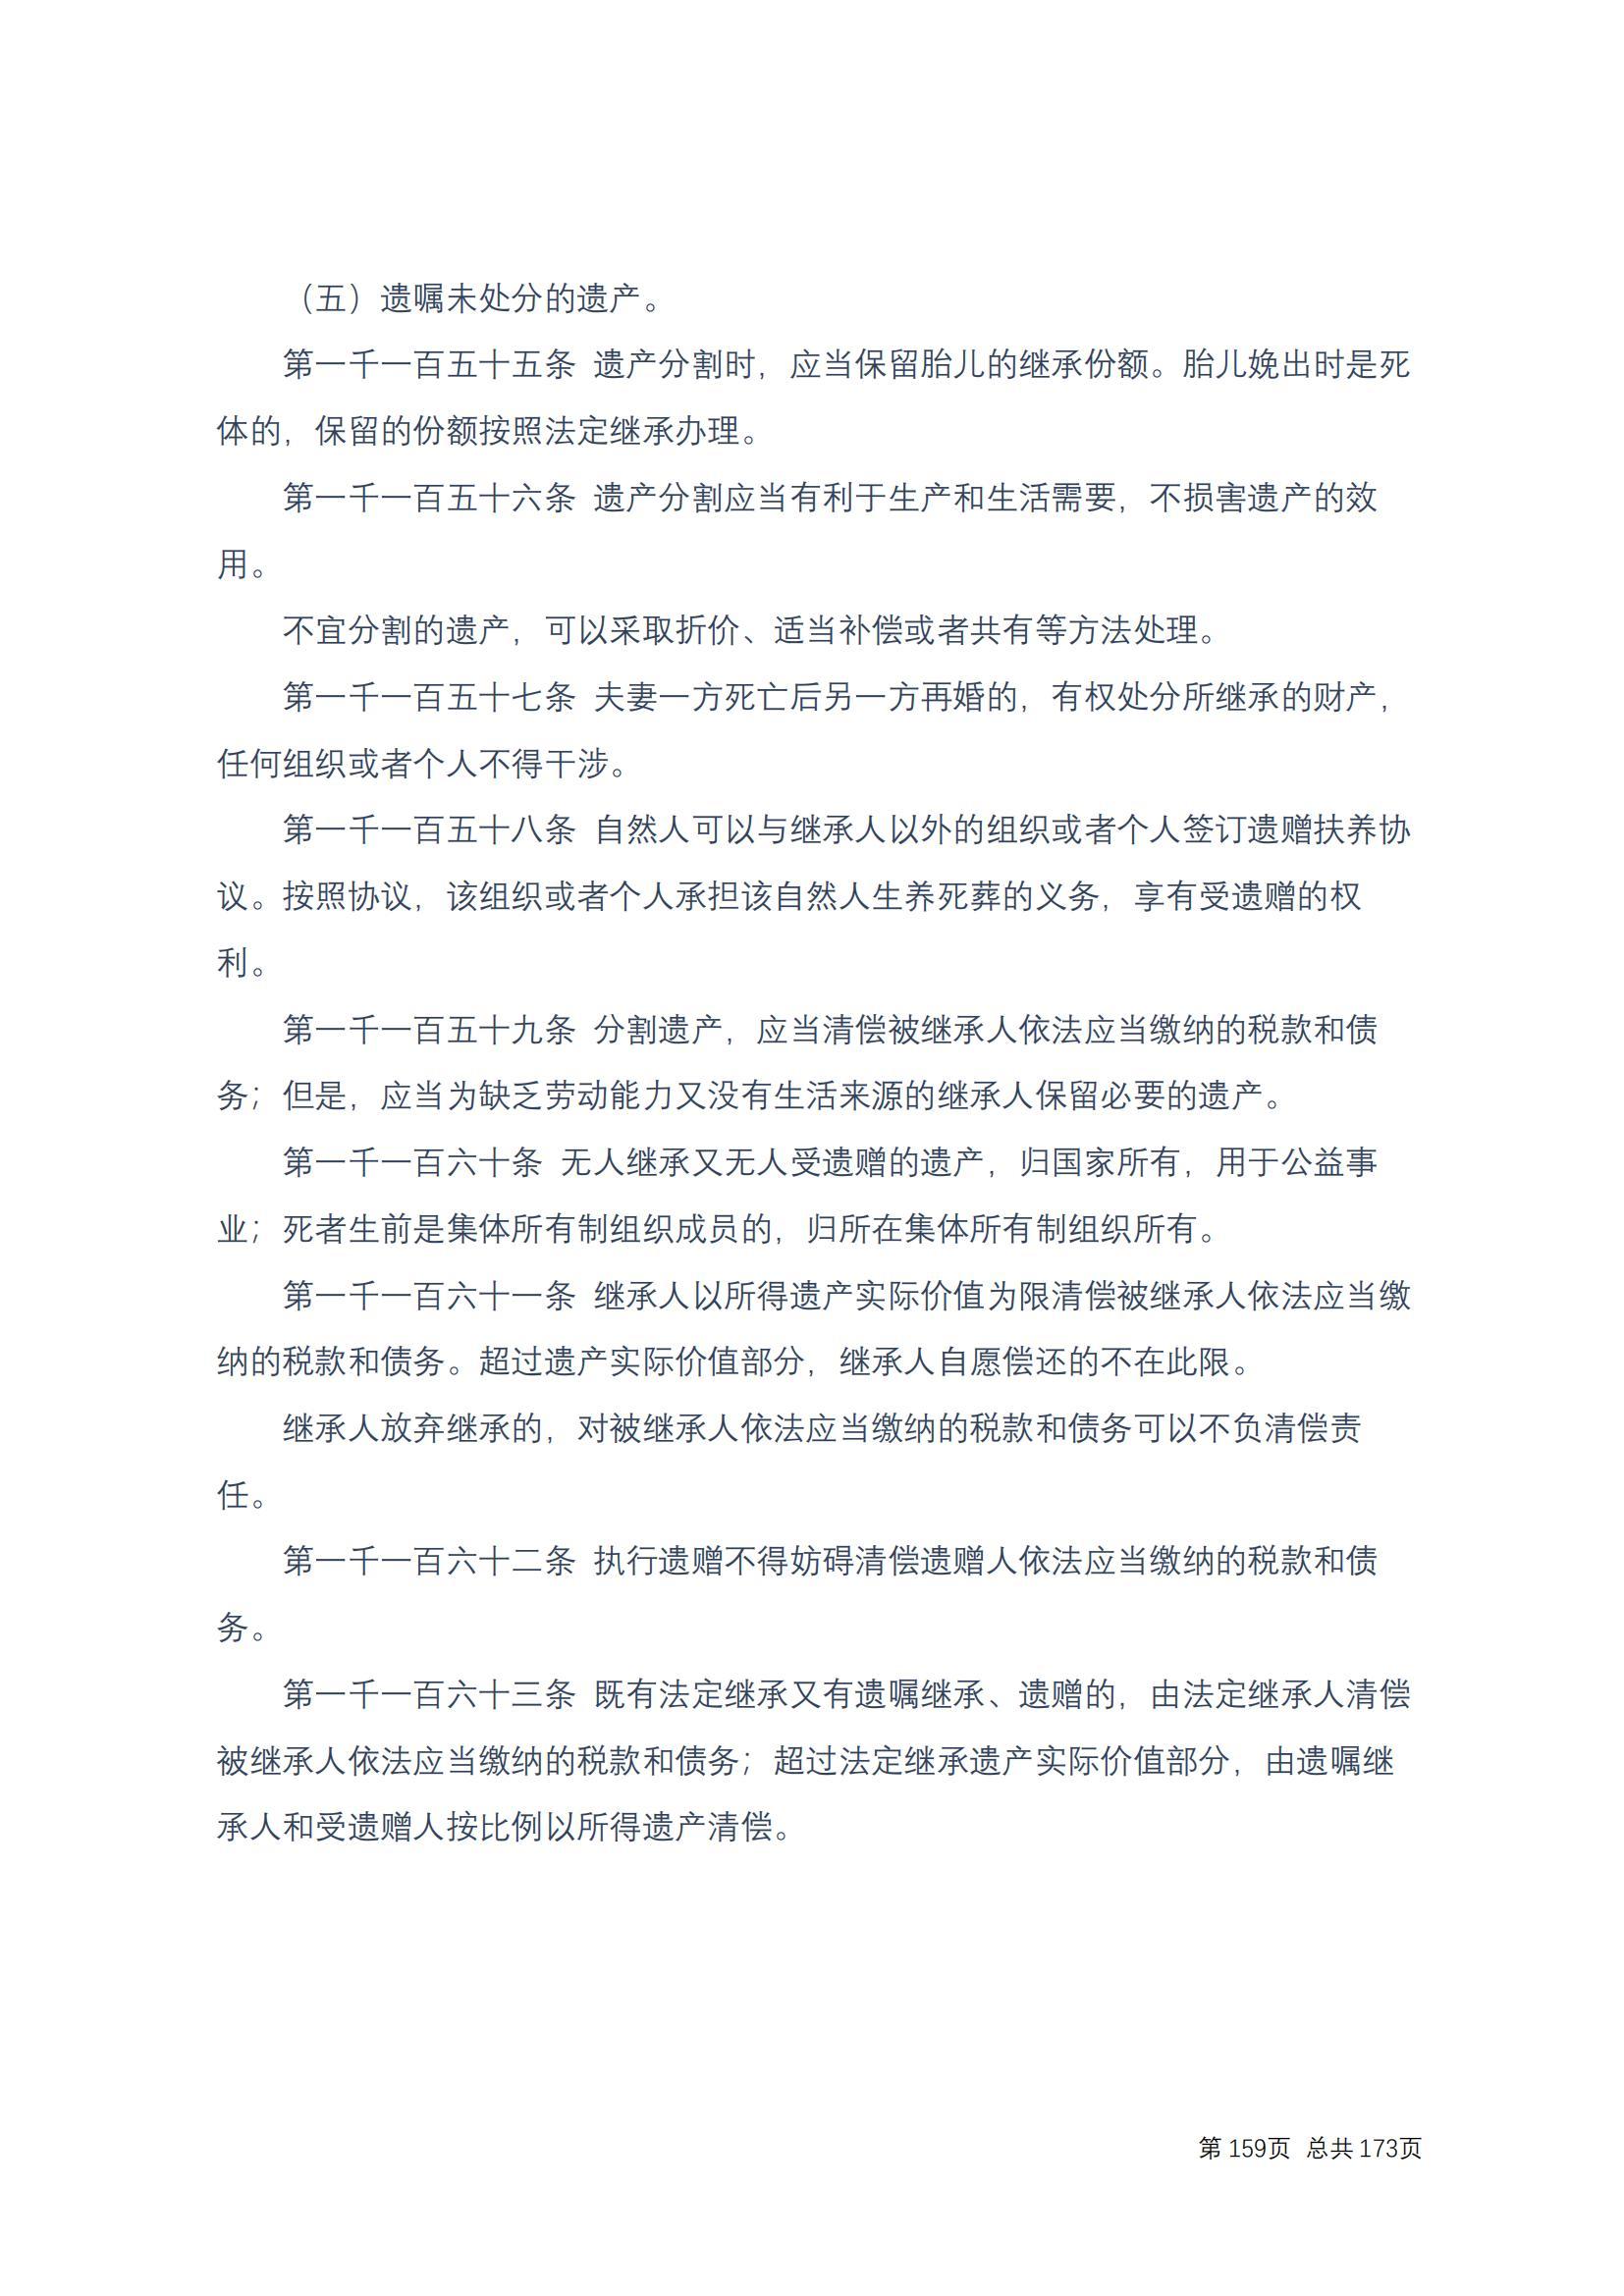 中华人民共和国民法典 修改过_158